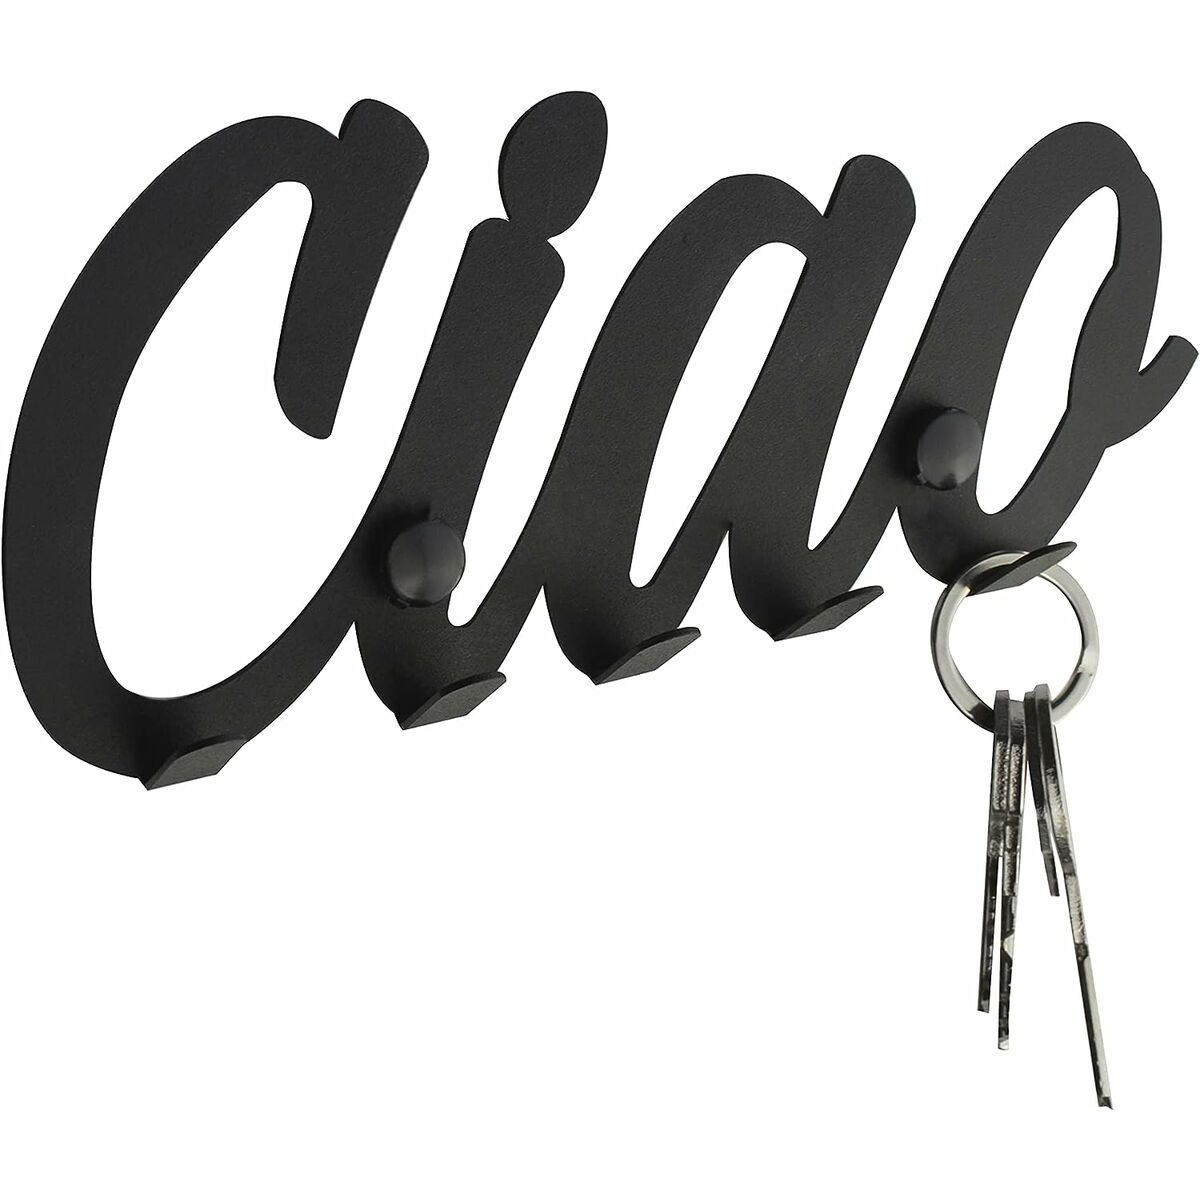 Accroche-clés Etterr Ciao Noir 22 x 15 x 25 cm